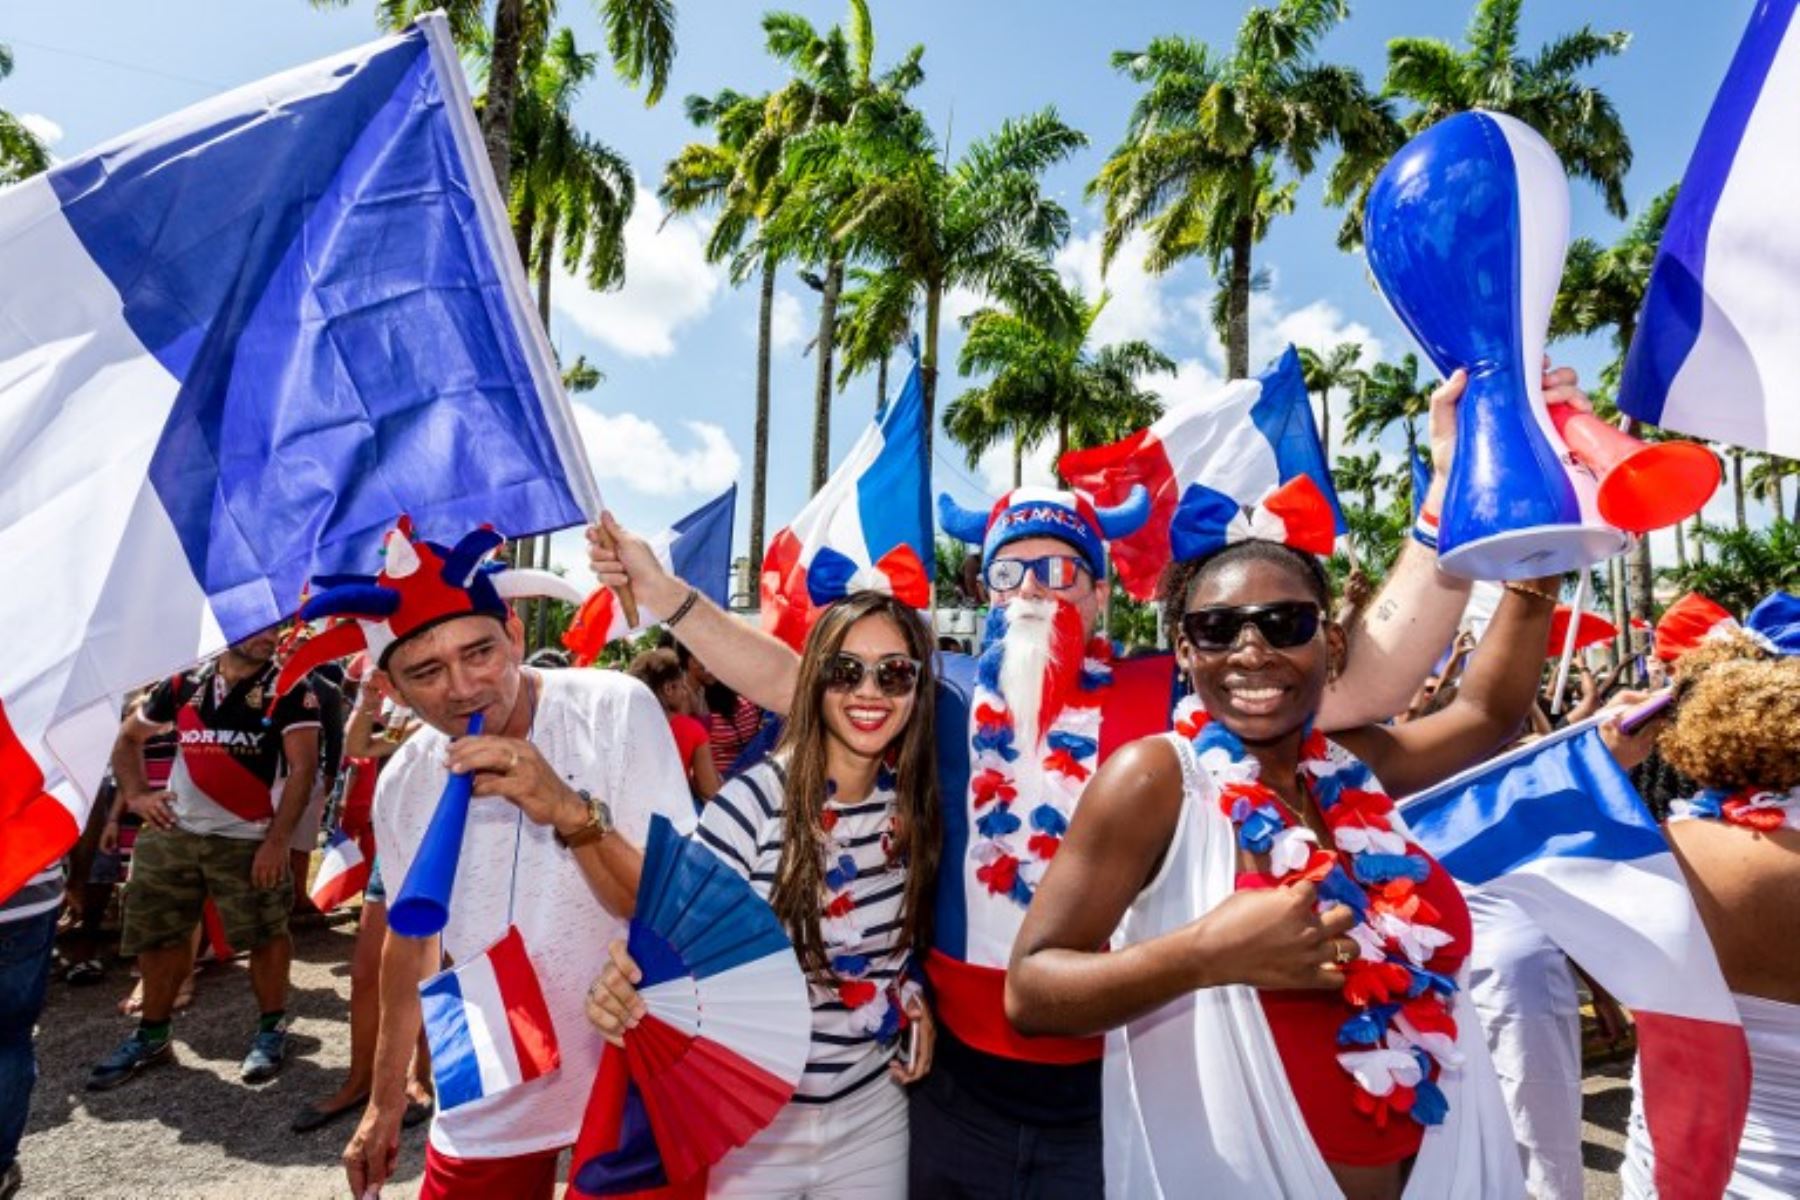 La gente celebra en las calles de Cayenne, en la Guayana Francesa, después de que Francia ganara el partido de fútbol final de la Copa Mundial Rusia 2018 entre Francia y Croacia.Foto:AFP